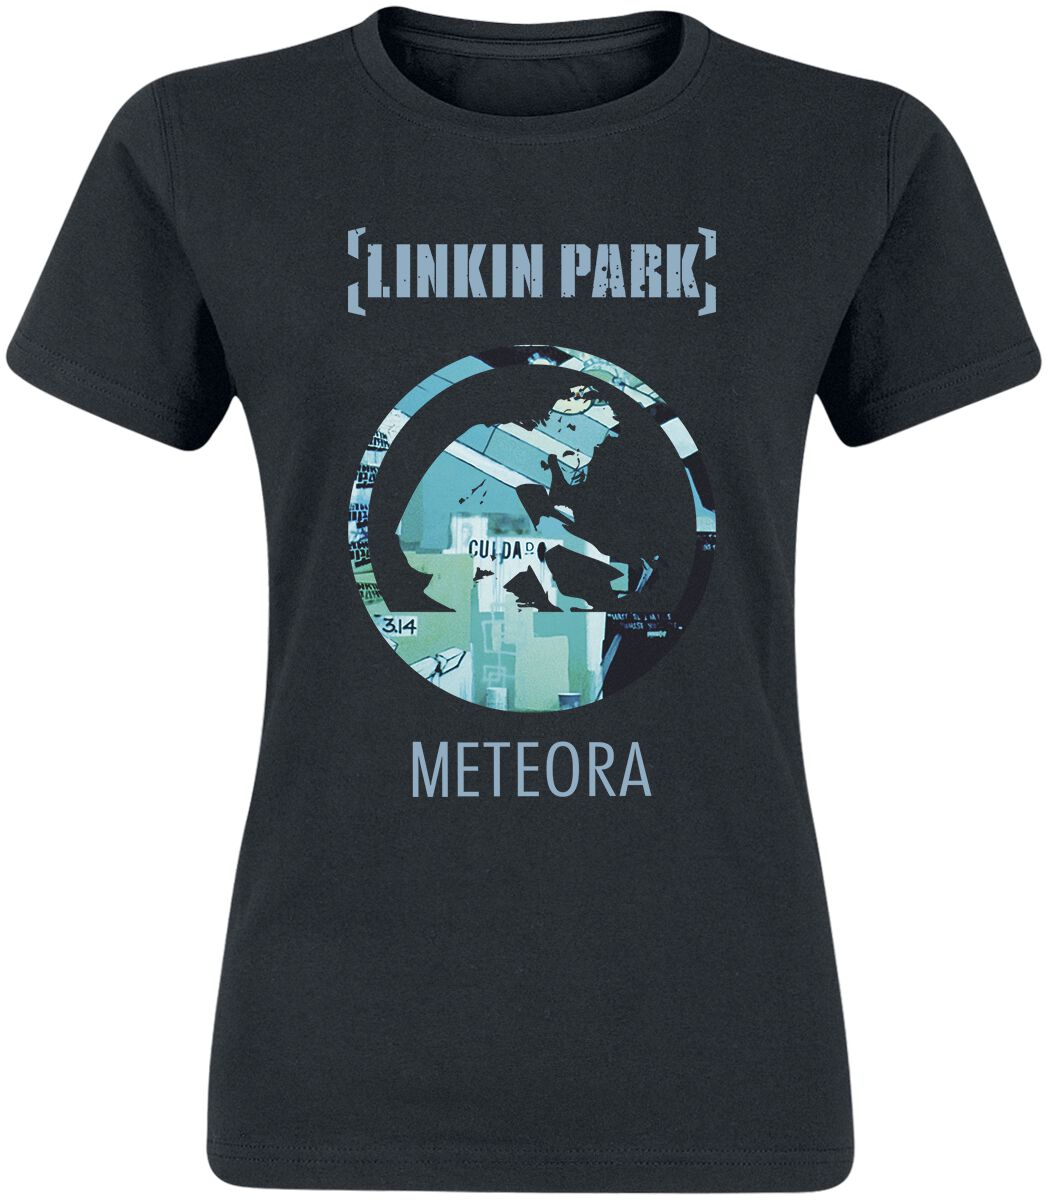 Linkin Park Meteora 20th Anniversary T-Shirt schwarz in XL